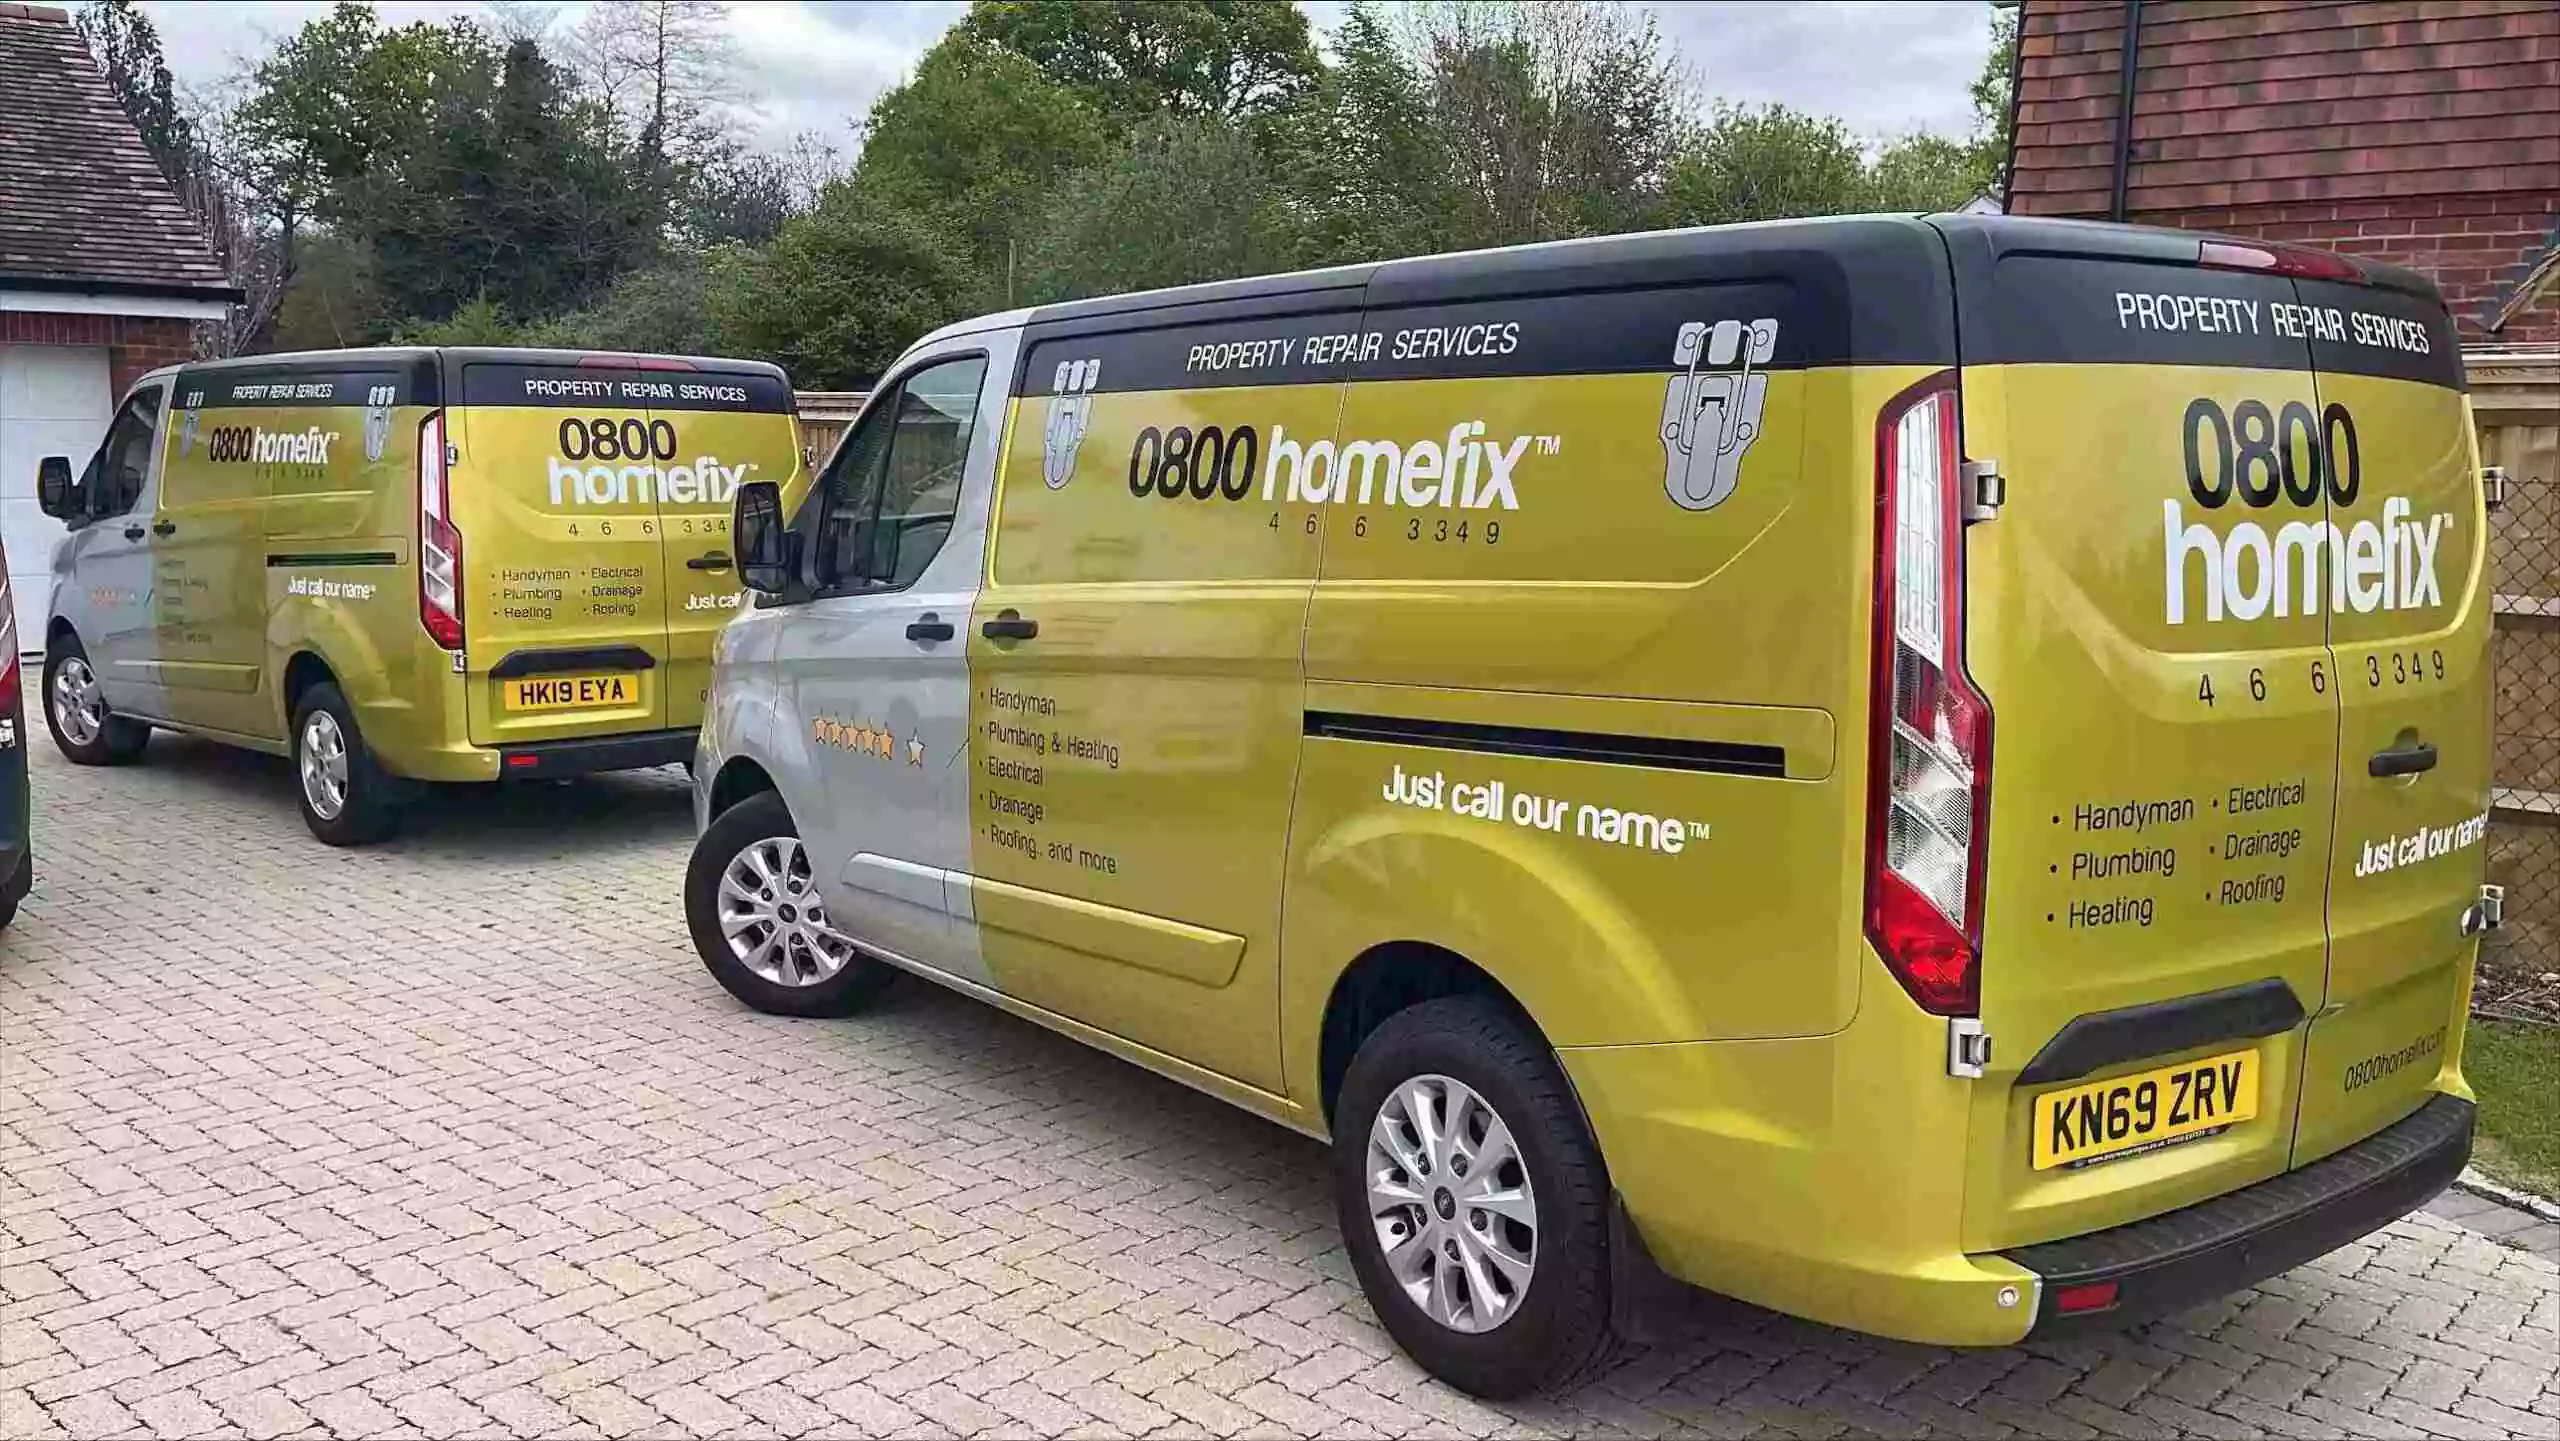 Homefix Company Vans parked at a job